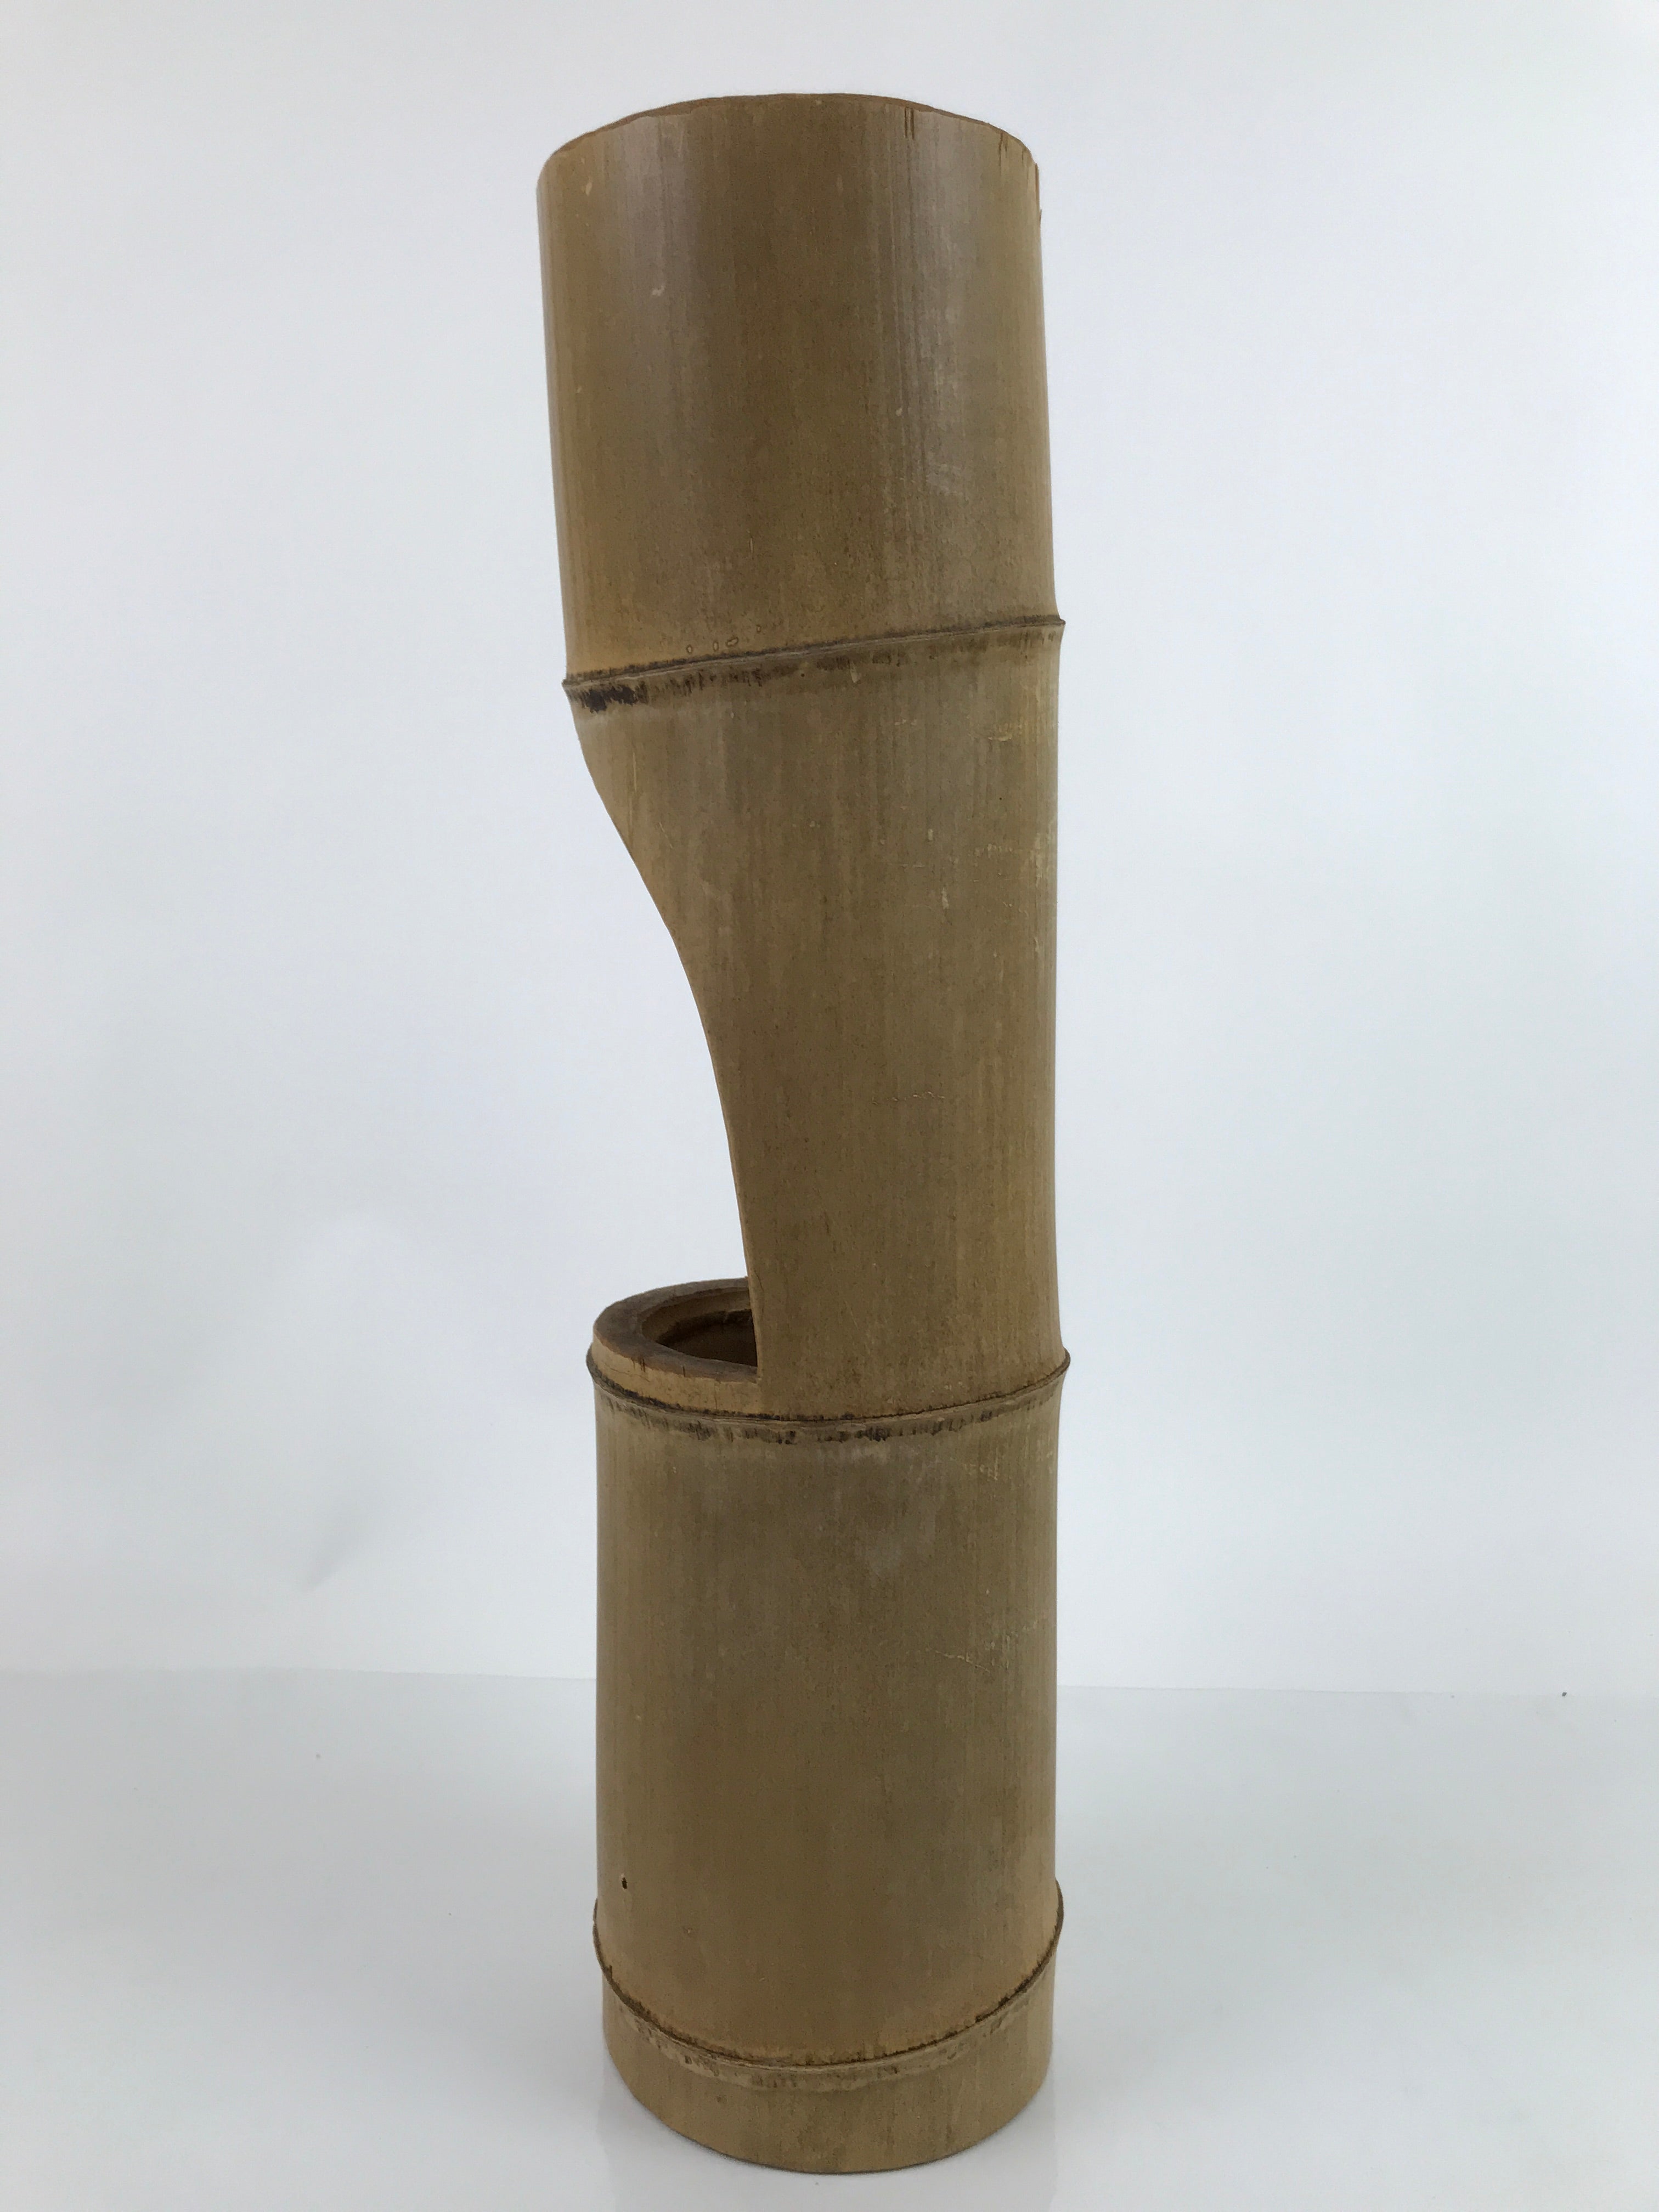 Japanese Bamboo Tube Flower Vase Kabin Vtg Ikebana Arrangement Brown FK101